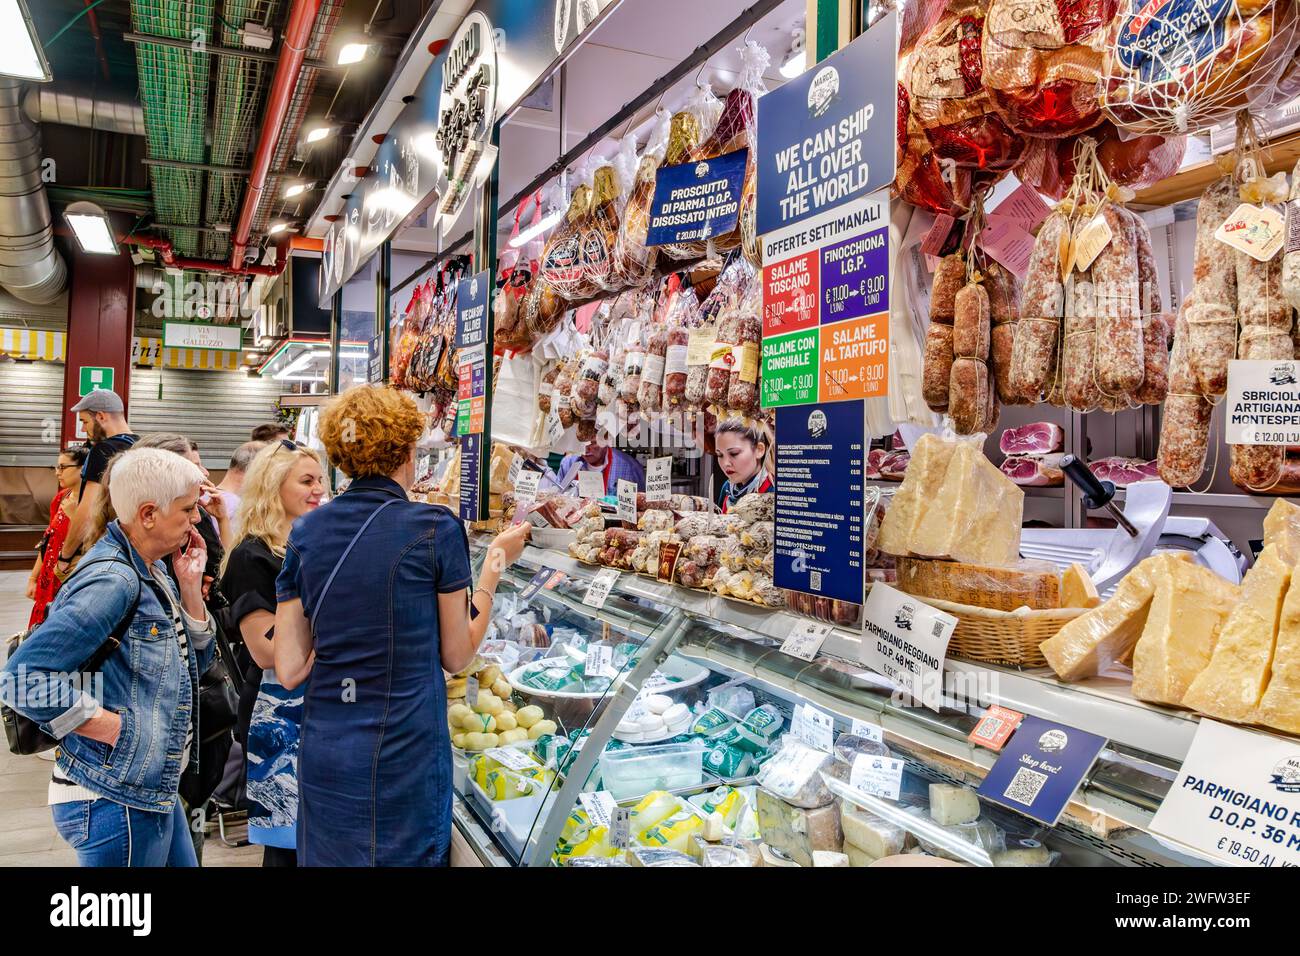 Les gens font des courses dans une épicerie fine pour la charcuterie et le fromage à Florence Mercato Centrale, un marché populaire de produits frais et de produits frais à Florence, en Italie Banque D'Images